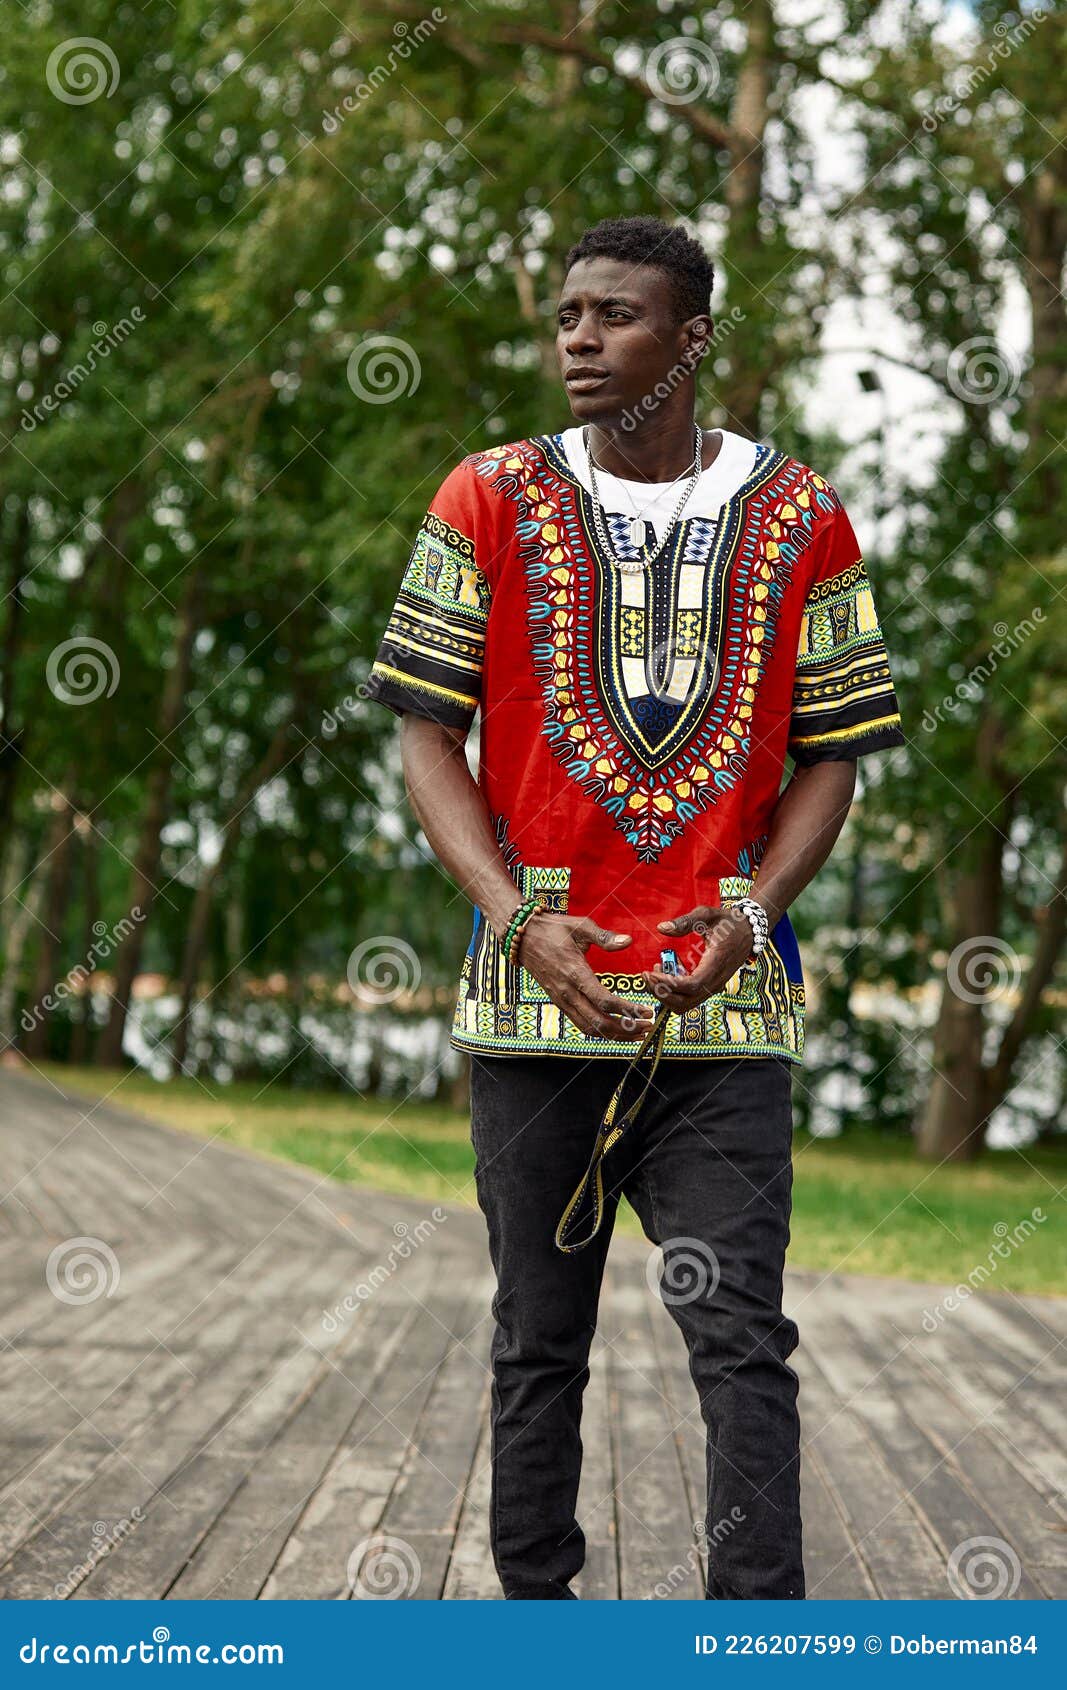 Absolutamente partícula pellizco Un Hombre Africano Vestido Con Traje Nacional Sudafricano, Un Joven Negro  Descansando En Un Parque Con Ropa Nacional. Imagen de archivo - Imagen de  étnico, nigeria: 226207599